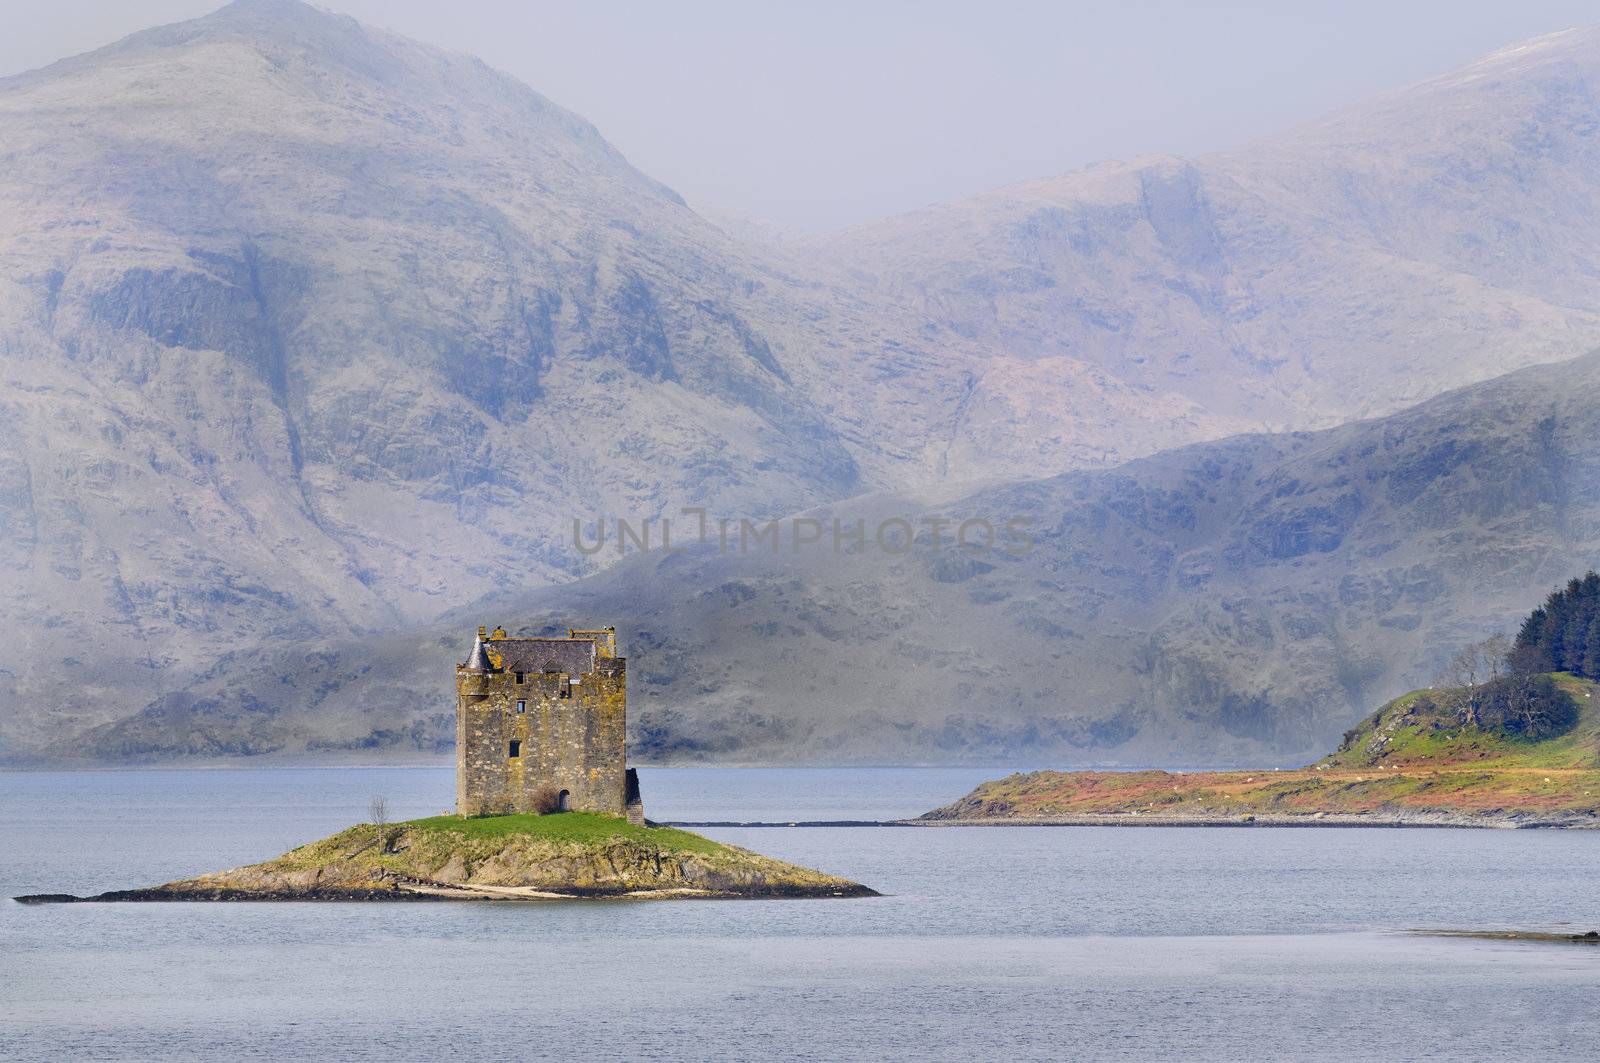 Stalker castle an island castle in Scotland by jeffbanke